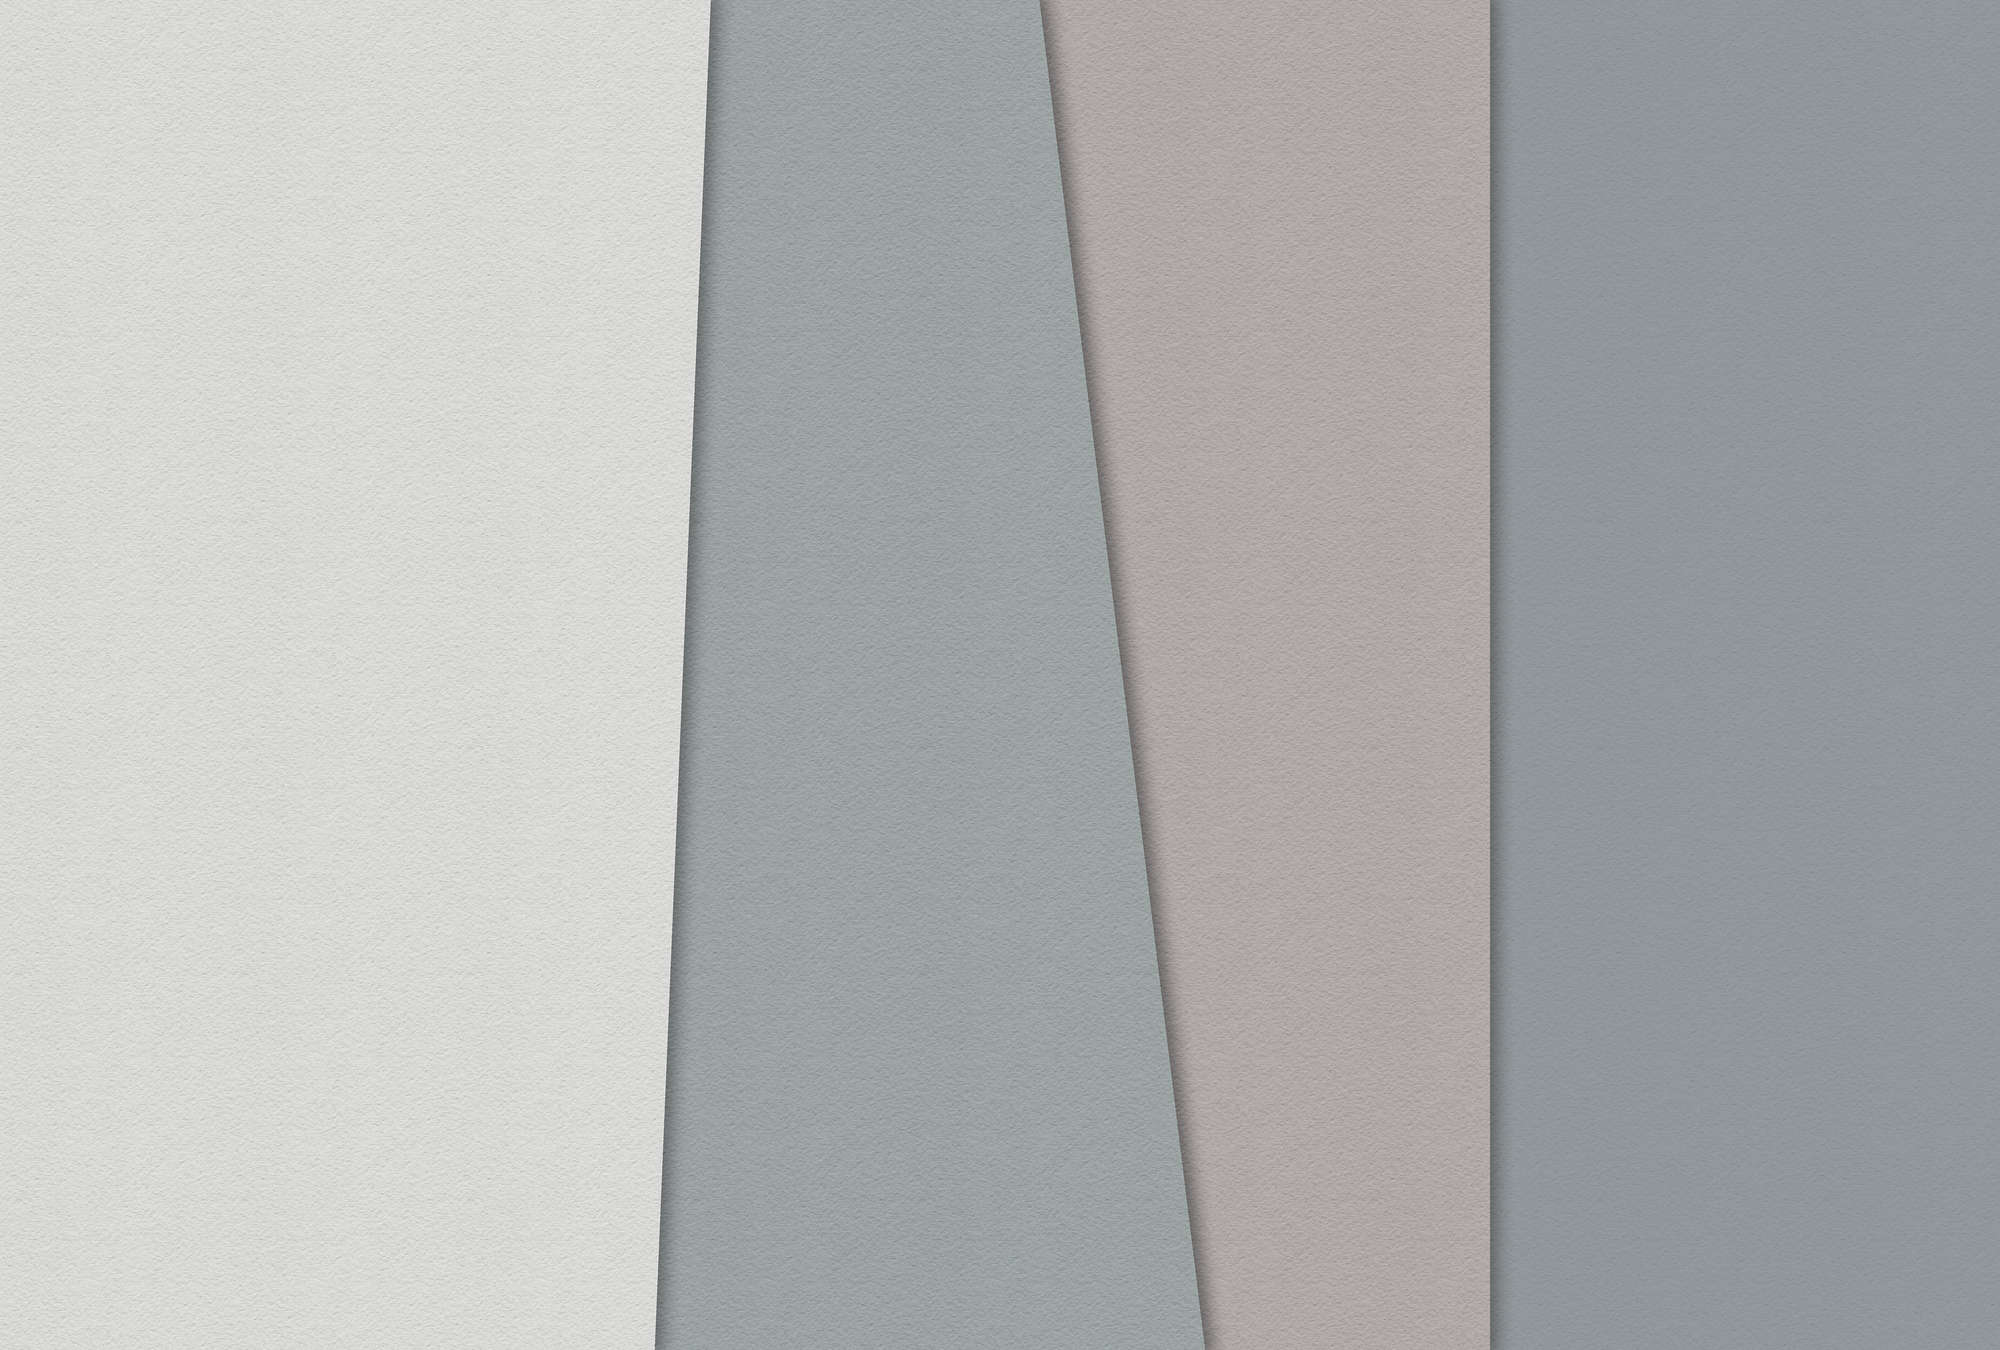             Carta stratificata 1 - Carta da parati grafica con aree colorate in struttura di carta fatta a mano - Blu, Crema | Natura qualita consistenza in tessuto non tessuto
        